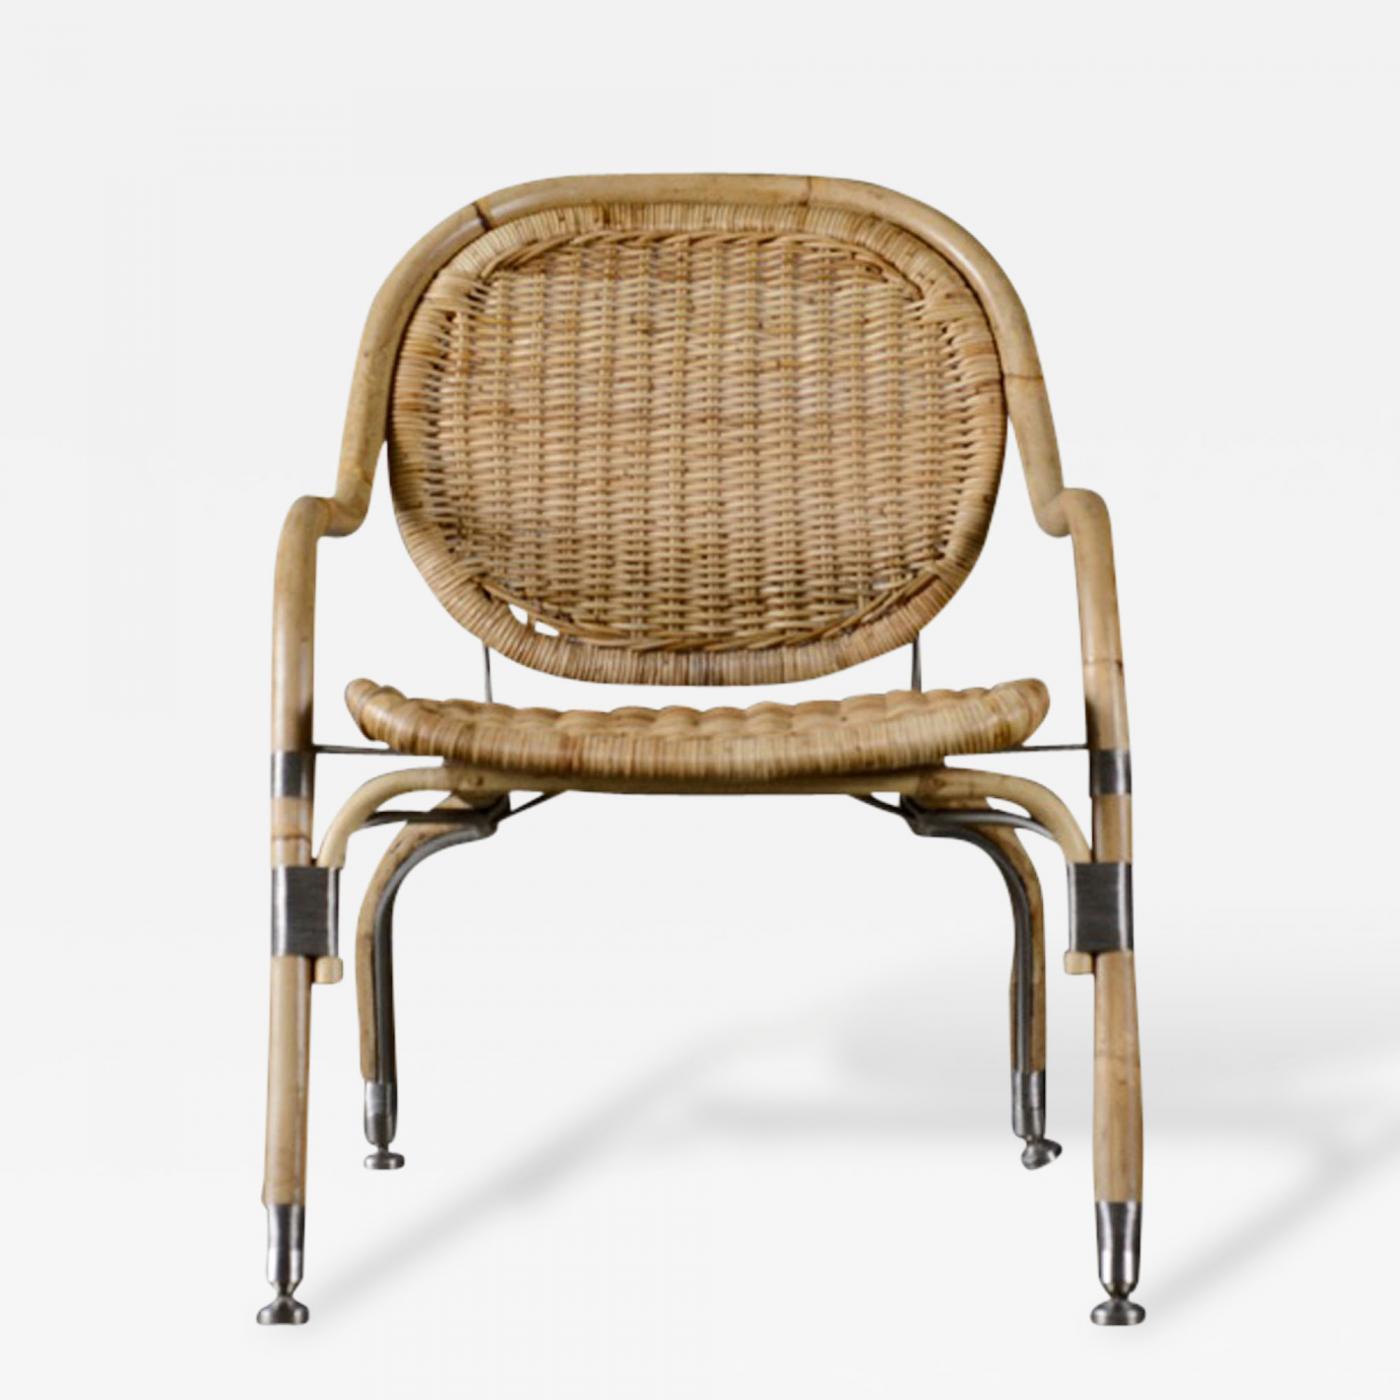 Mats - Mats Cane Chair